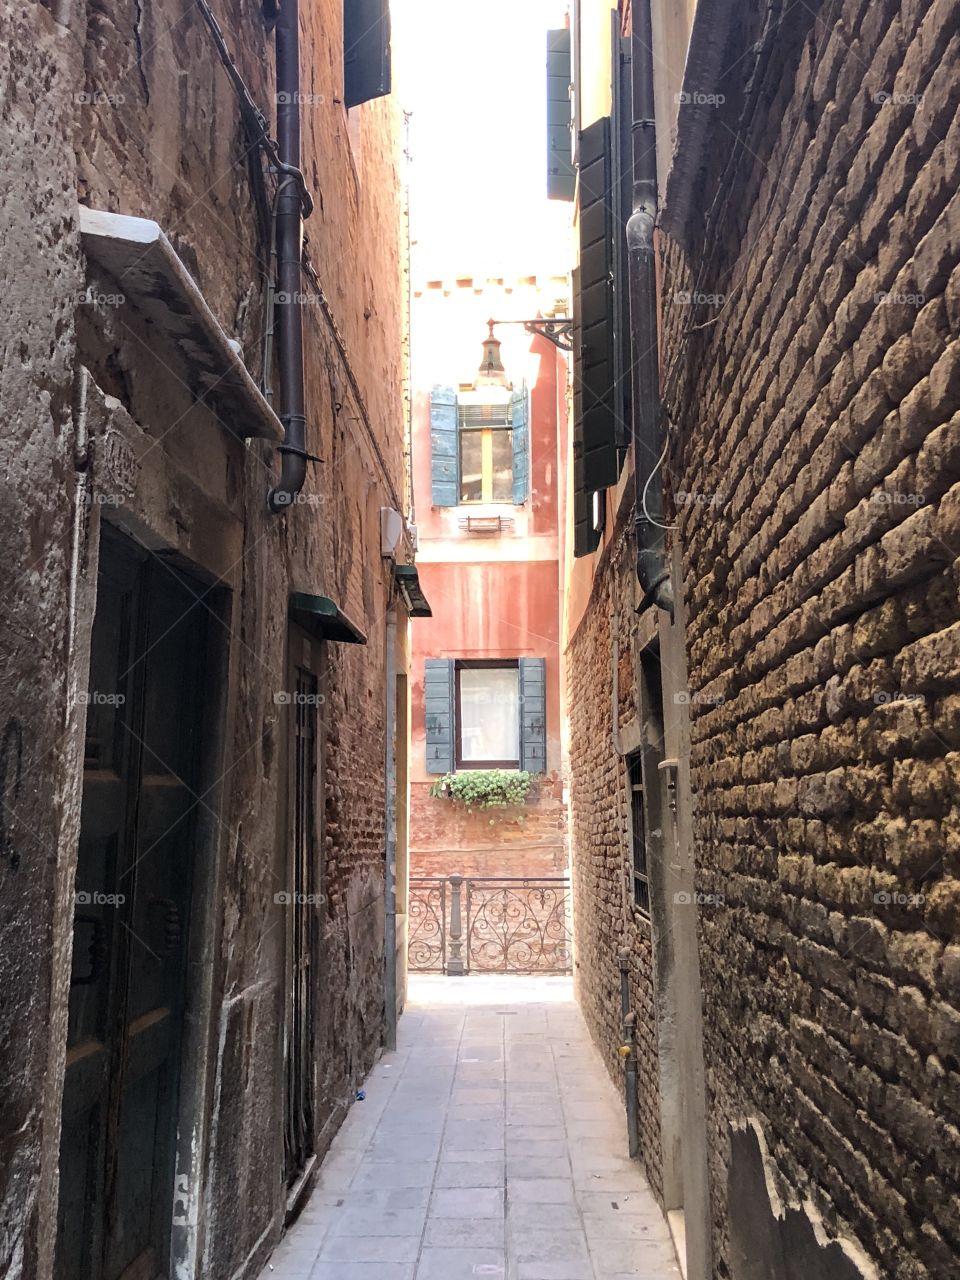 Venetian street in italy 2018 October 